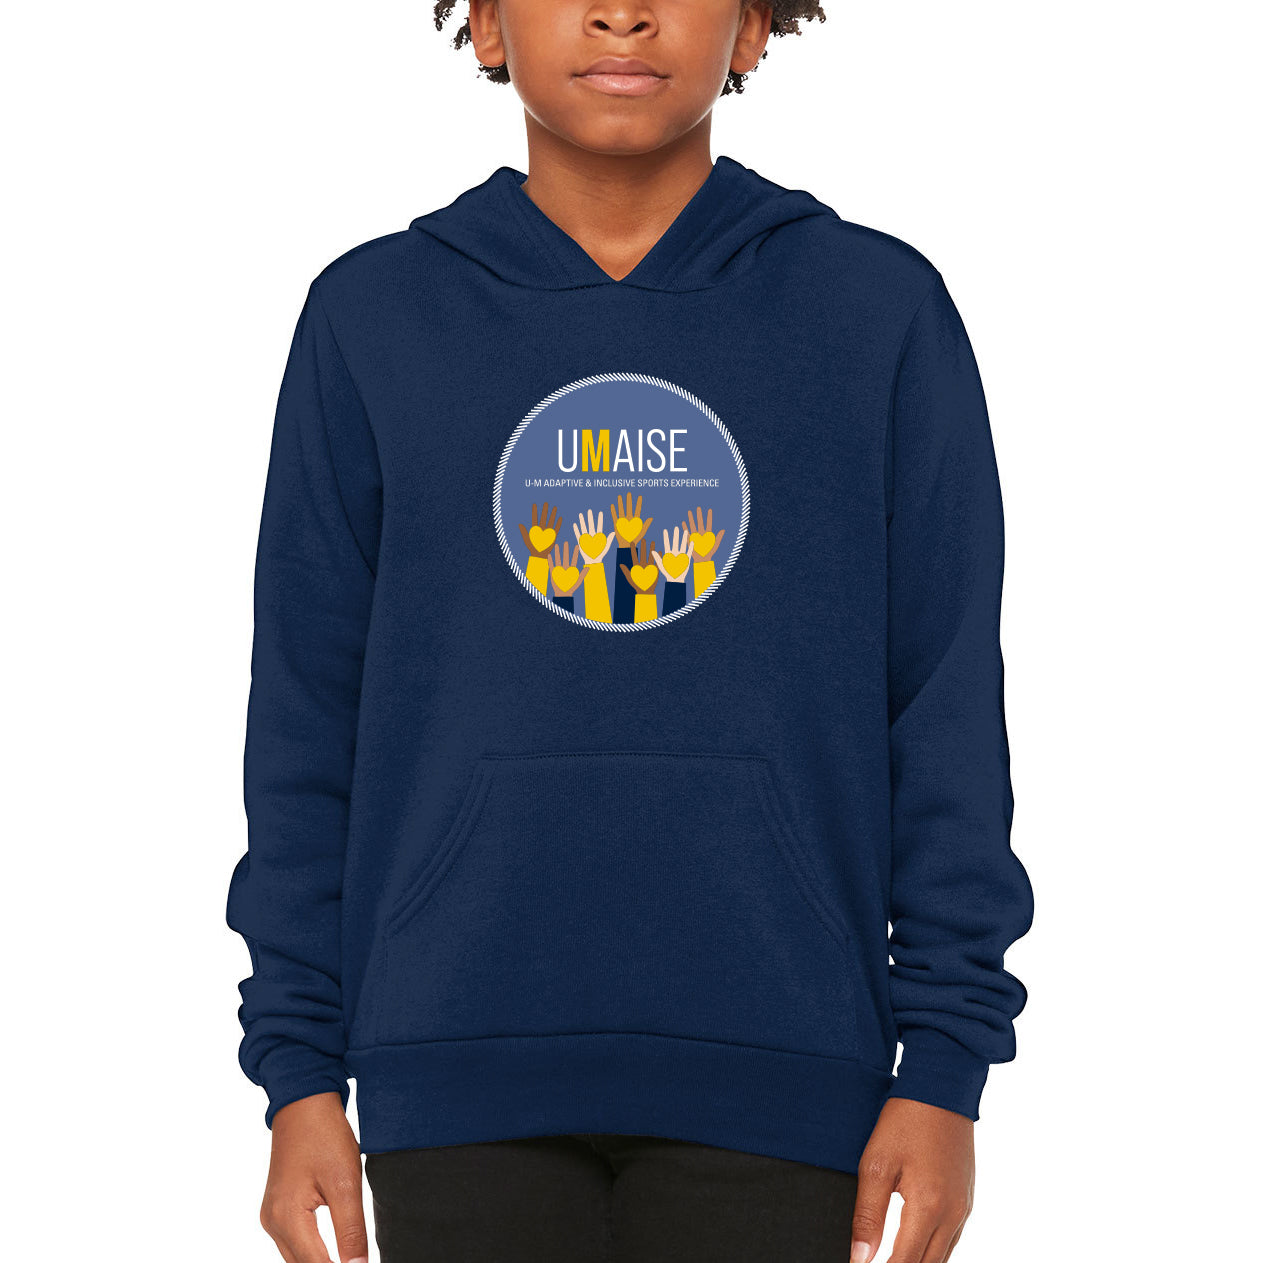 UMAISE Youth Hooded Sweatshirt - Navy